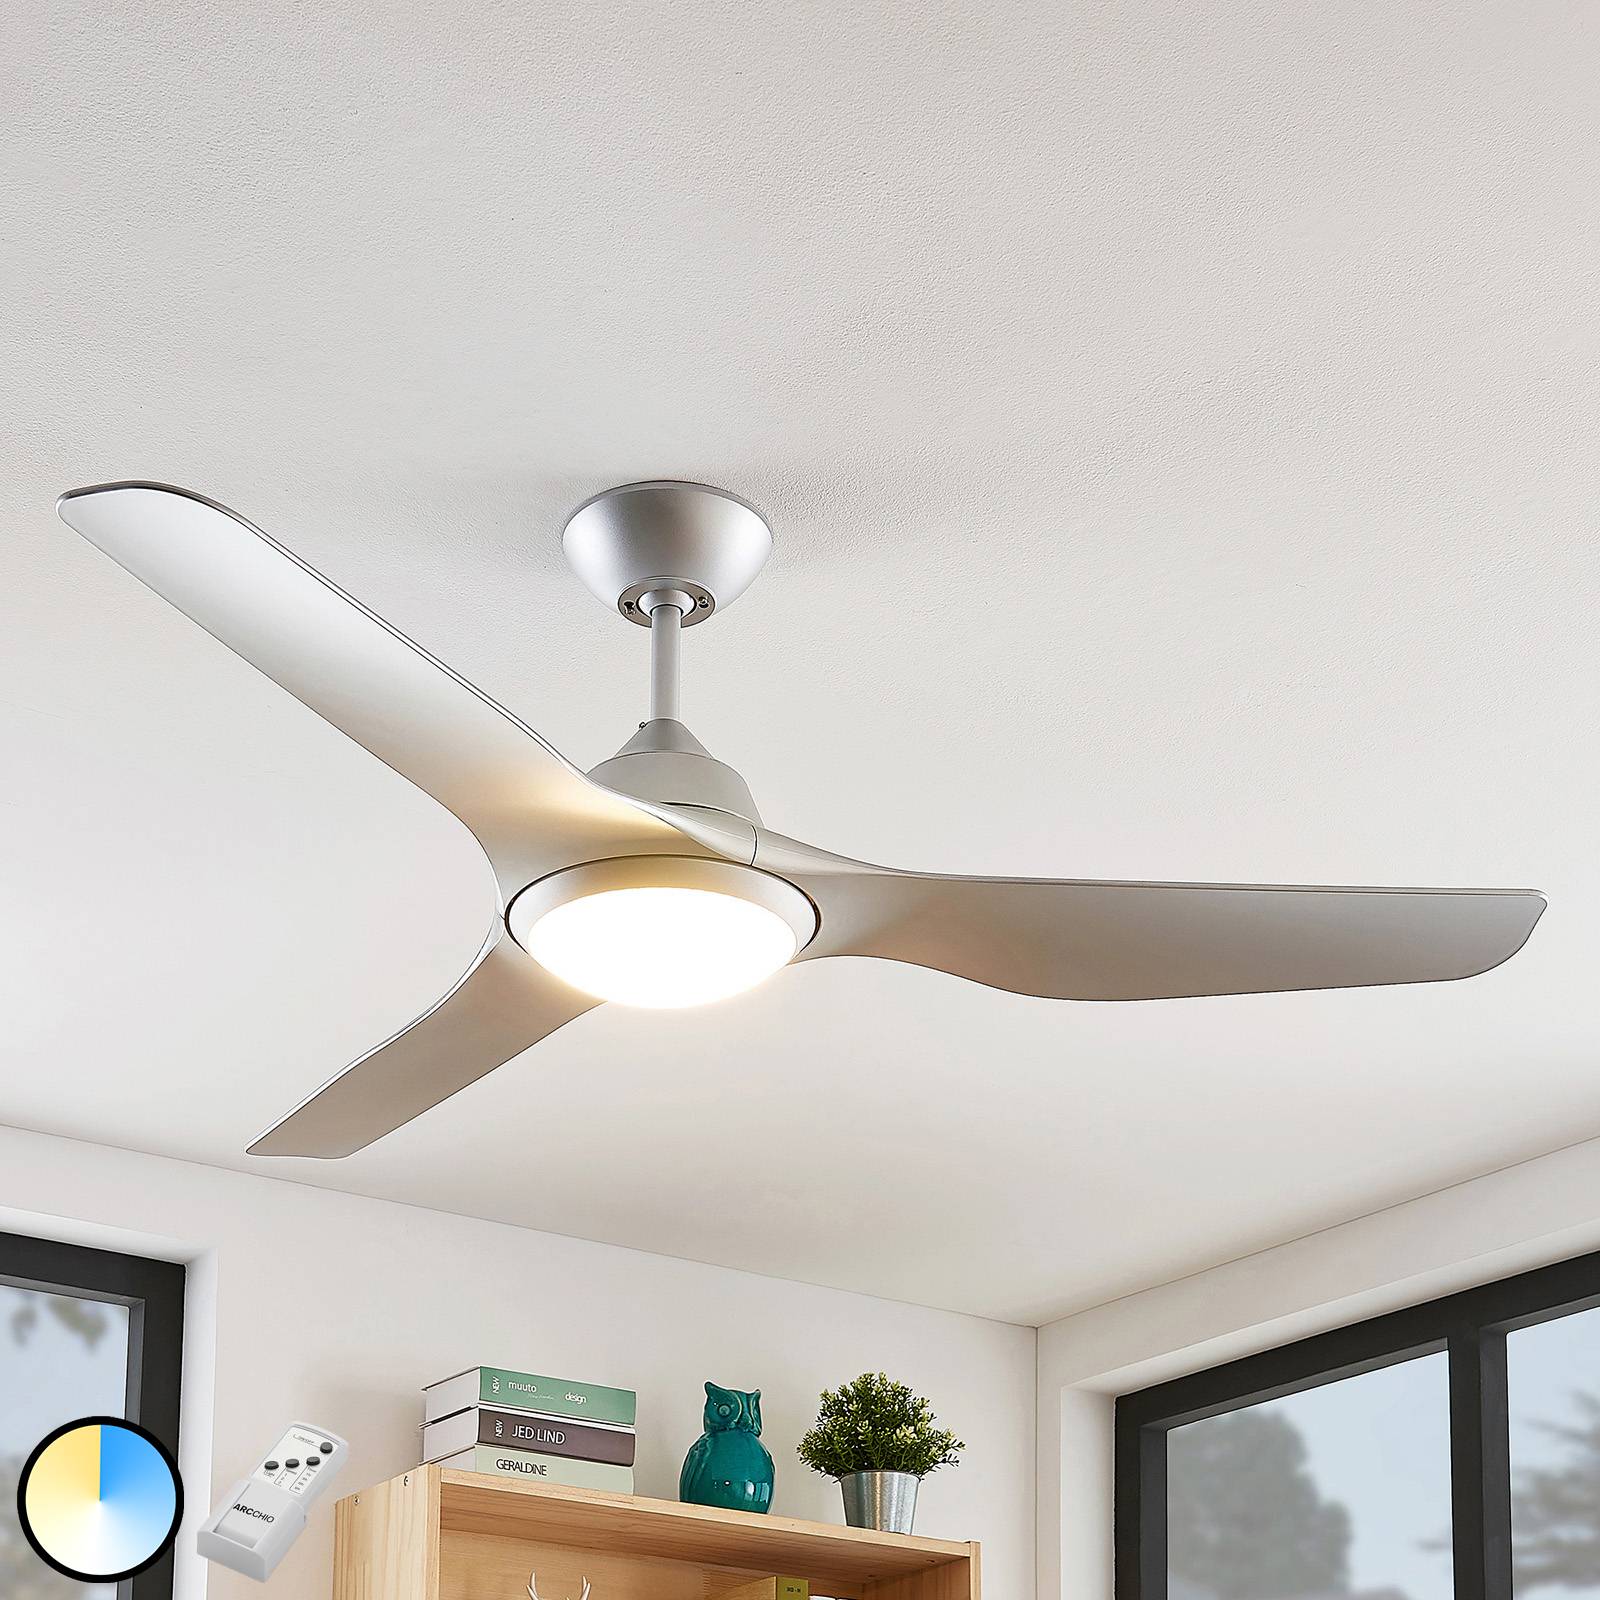 Starluna Pira LED ceiling fan, 3 blades, silver